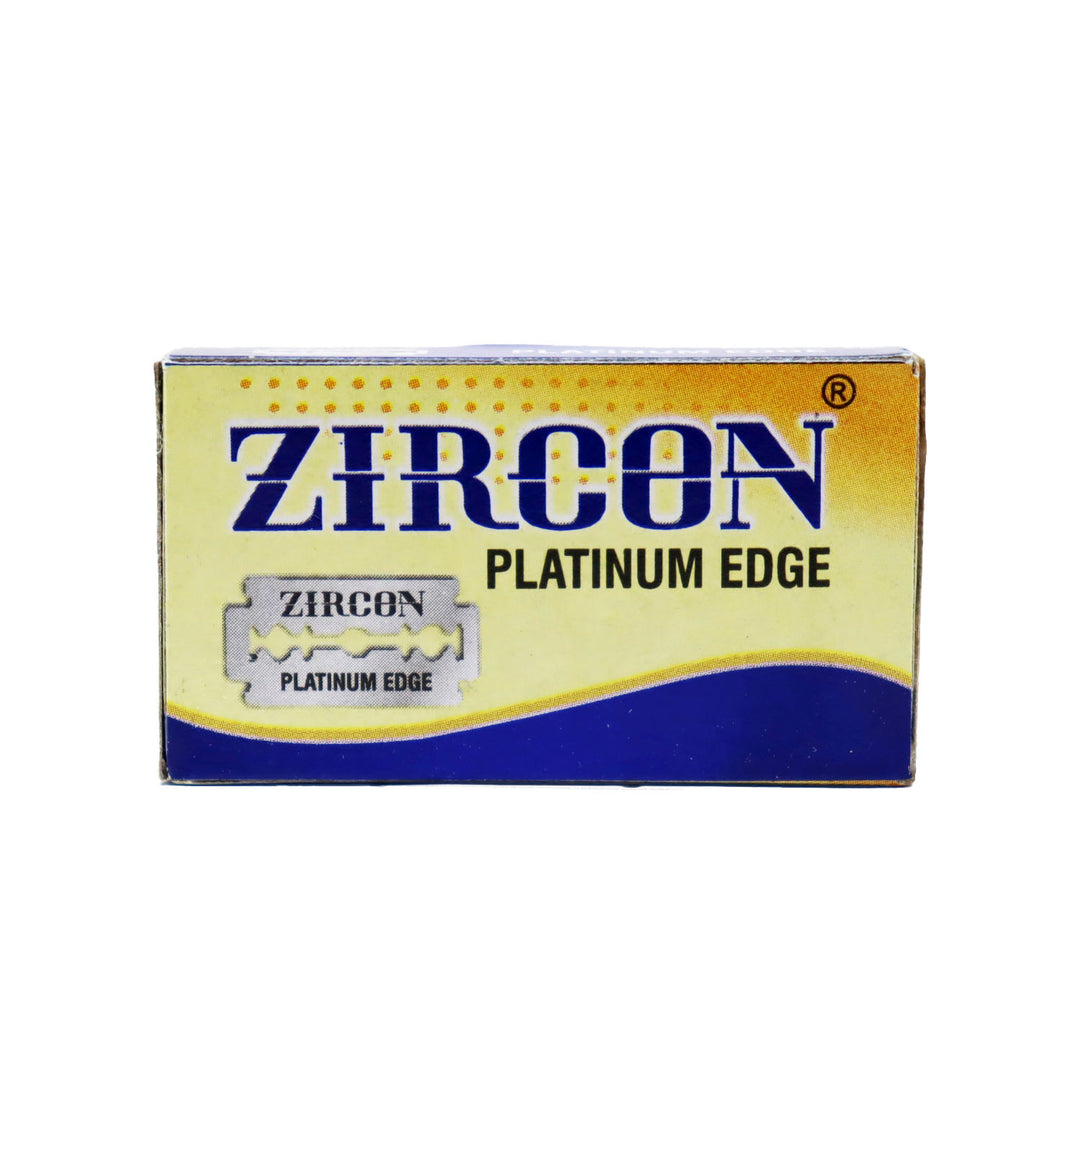 

Zircon Platinum Lamette Da Barba Box of 10 pieces 